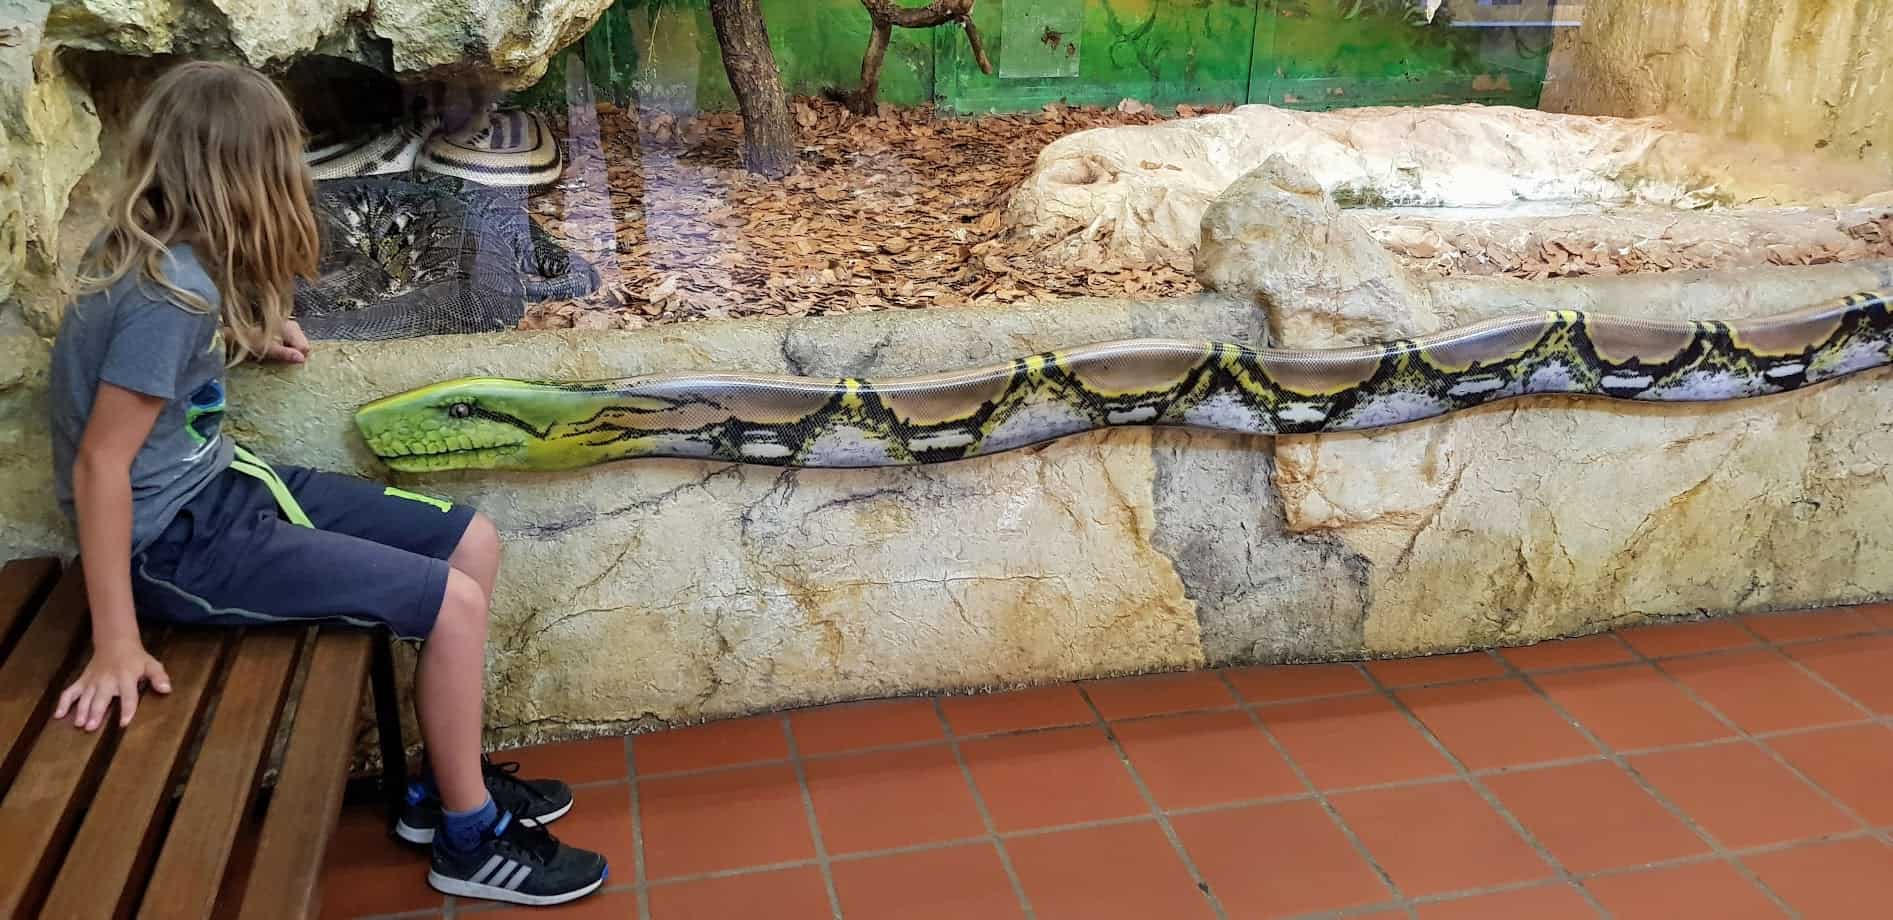 Kind beobachtet Riesenschlangen bei Familienausflug in Kärnten Klagenfurt - Reptilienzoo Happ